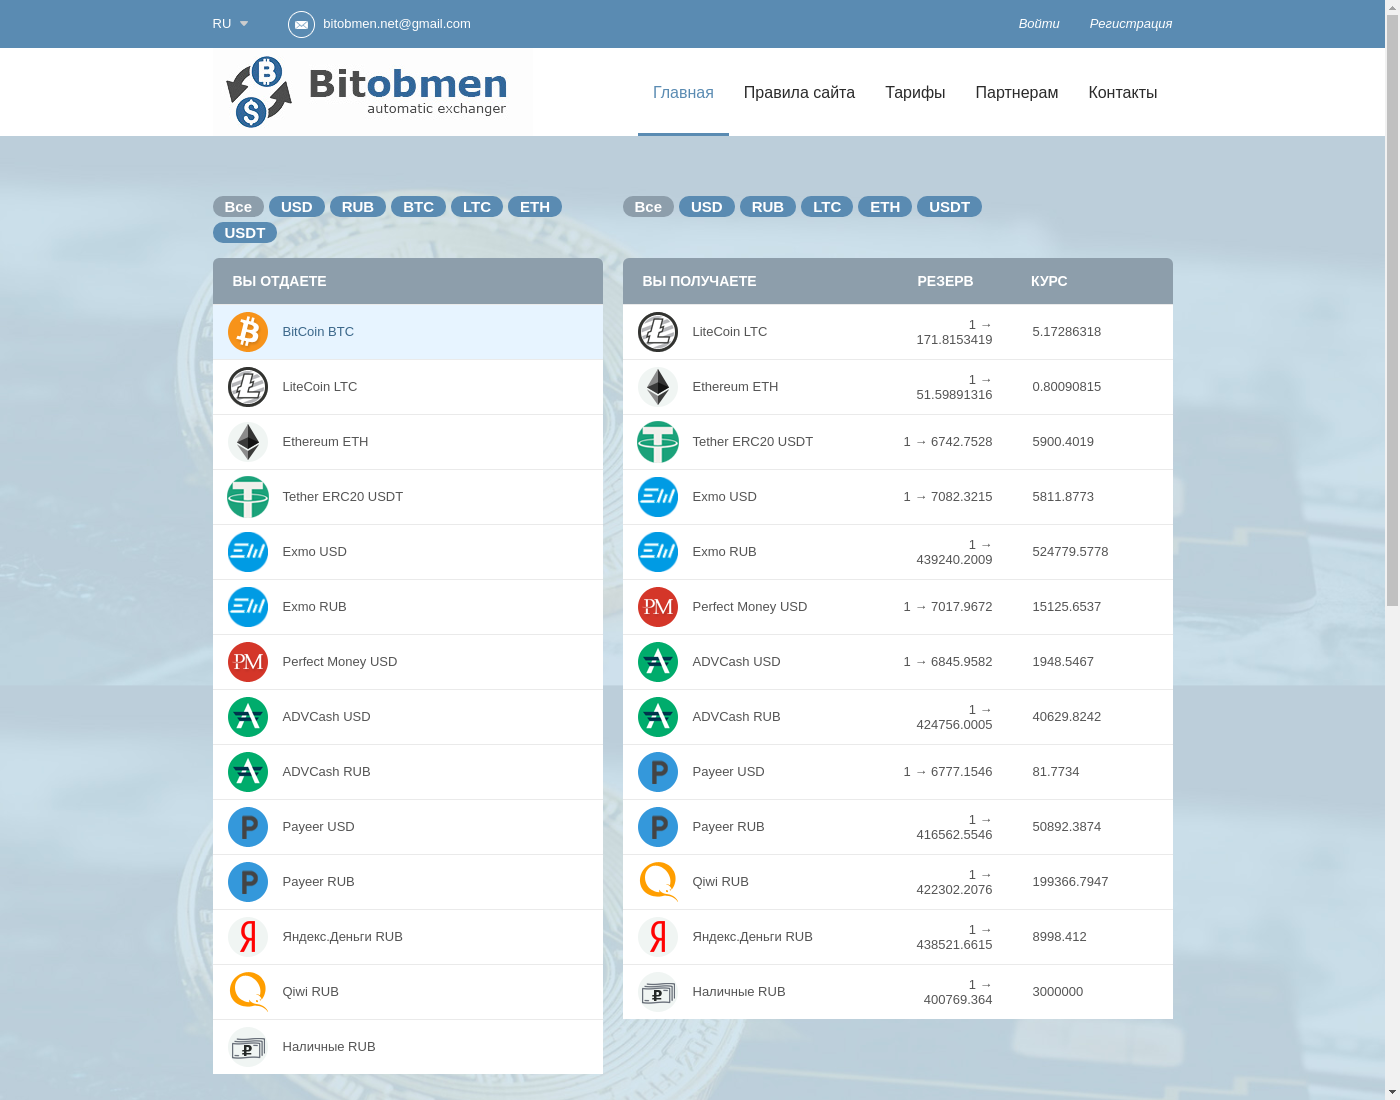 bitobmen интерфейс пользователя: домашняя страничка на языке — Русский